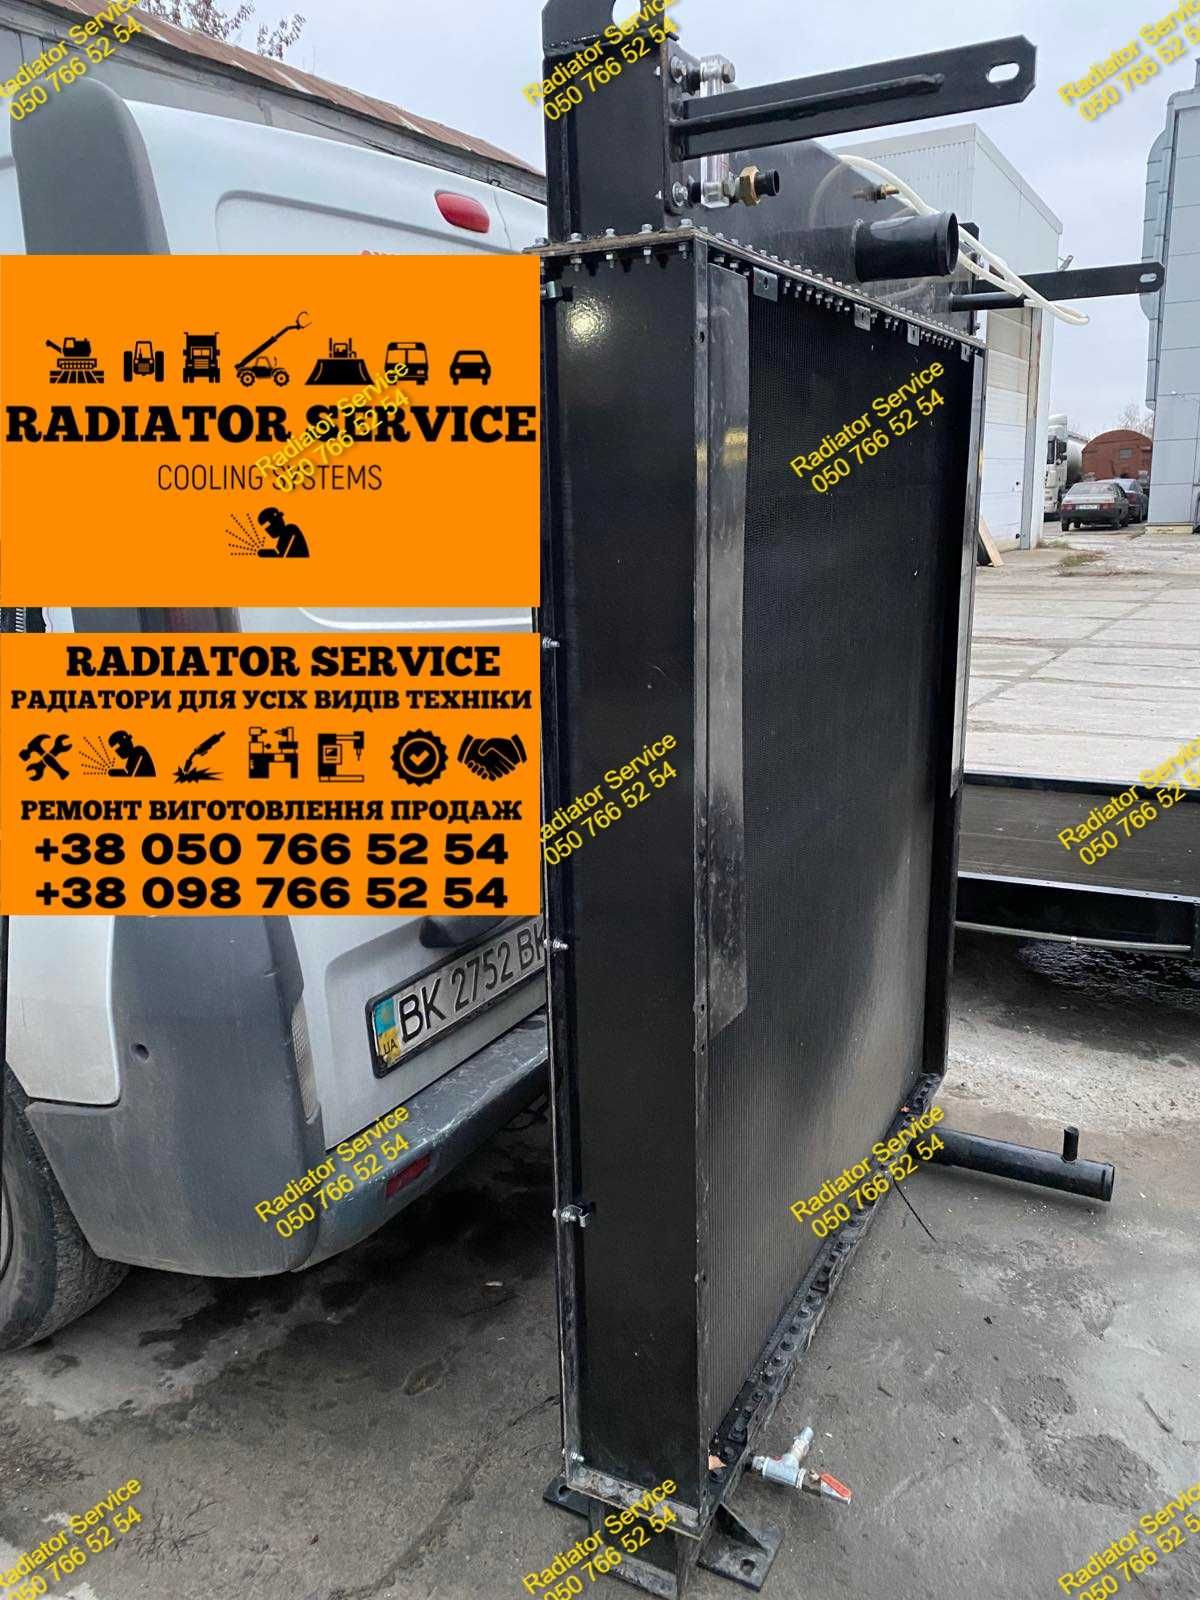 Радиатор на генератор електро стануию ремонт виготовленя